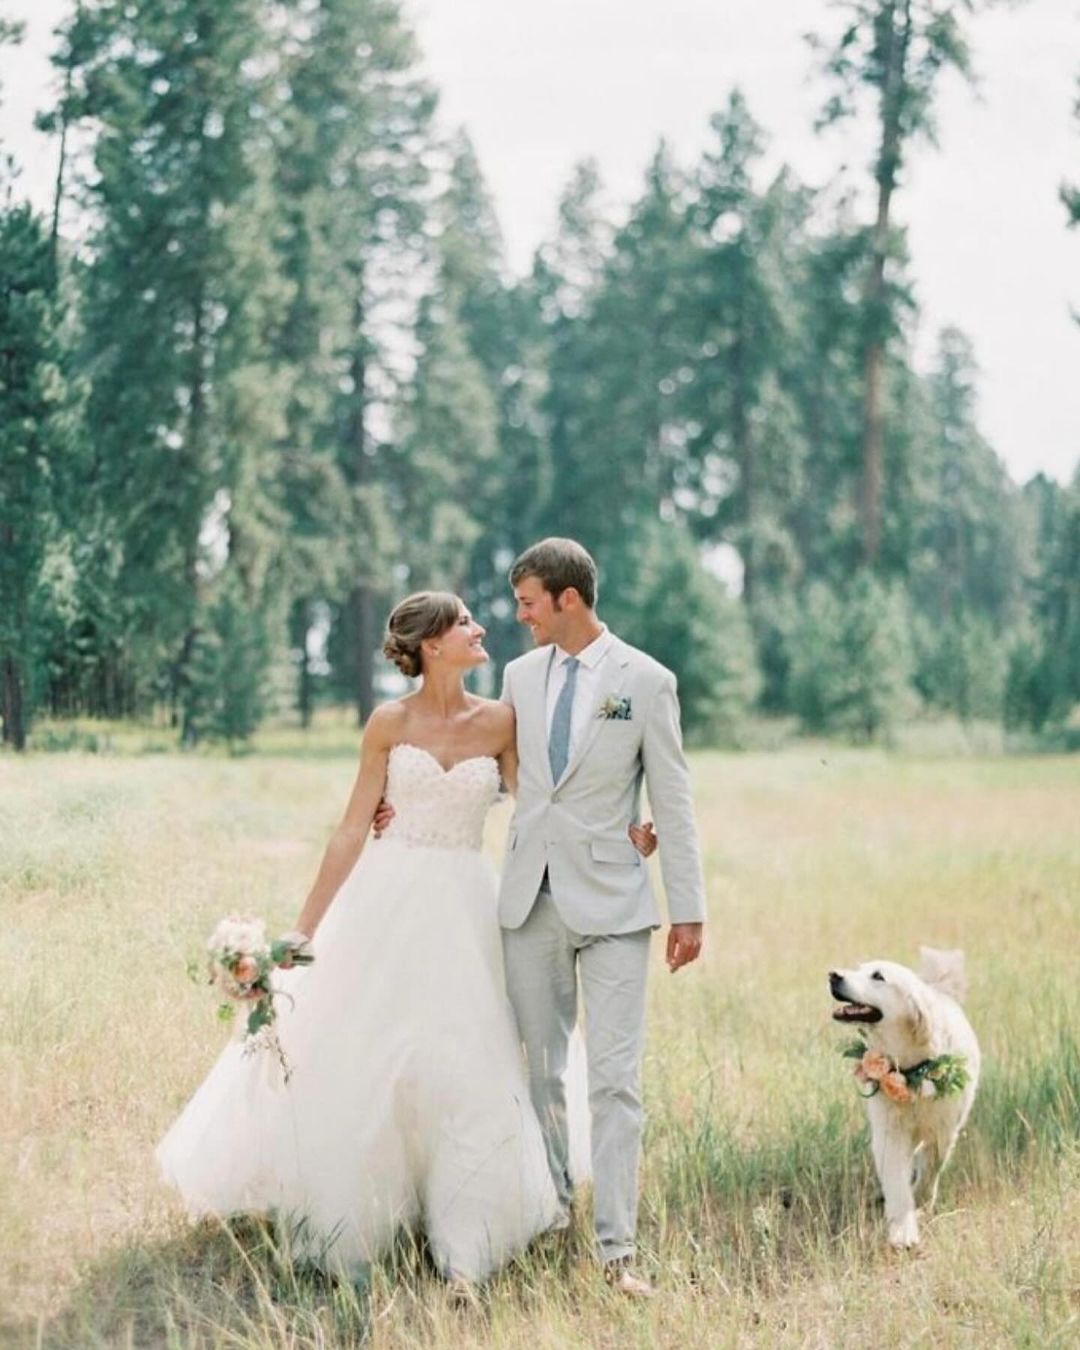 Pareja de recién casados paseando con su perro, que lleva un collar de flores, en un ambiente natural.